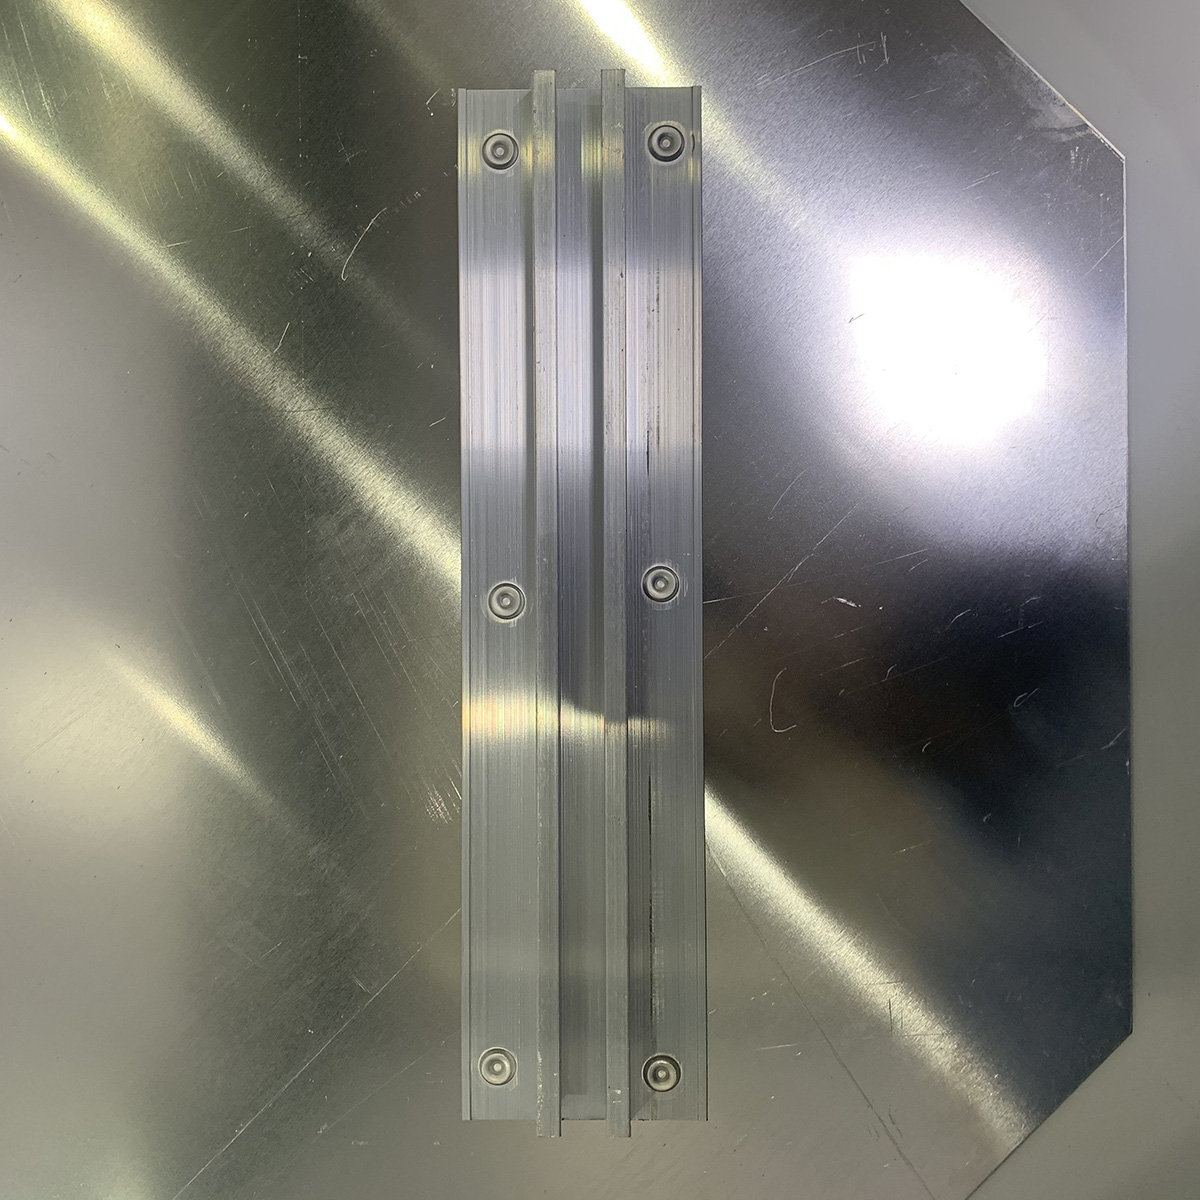 "PARE " Placa de señal de tráfico de aluminio reflectante Forma de 8 lados